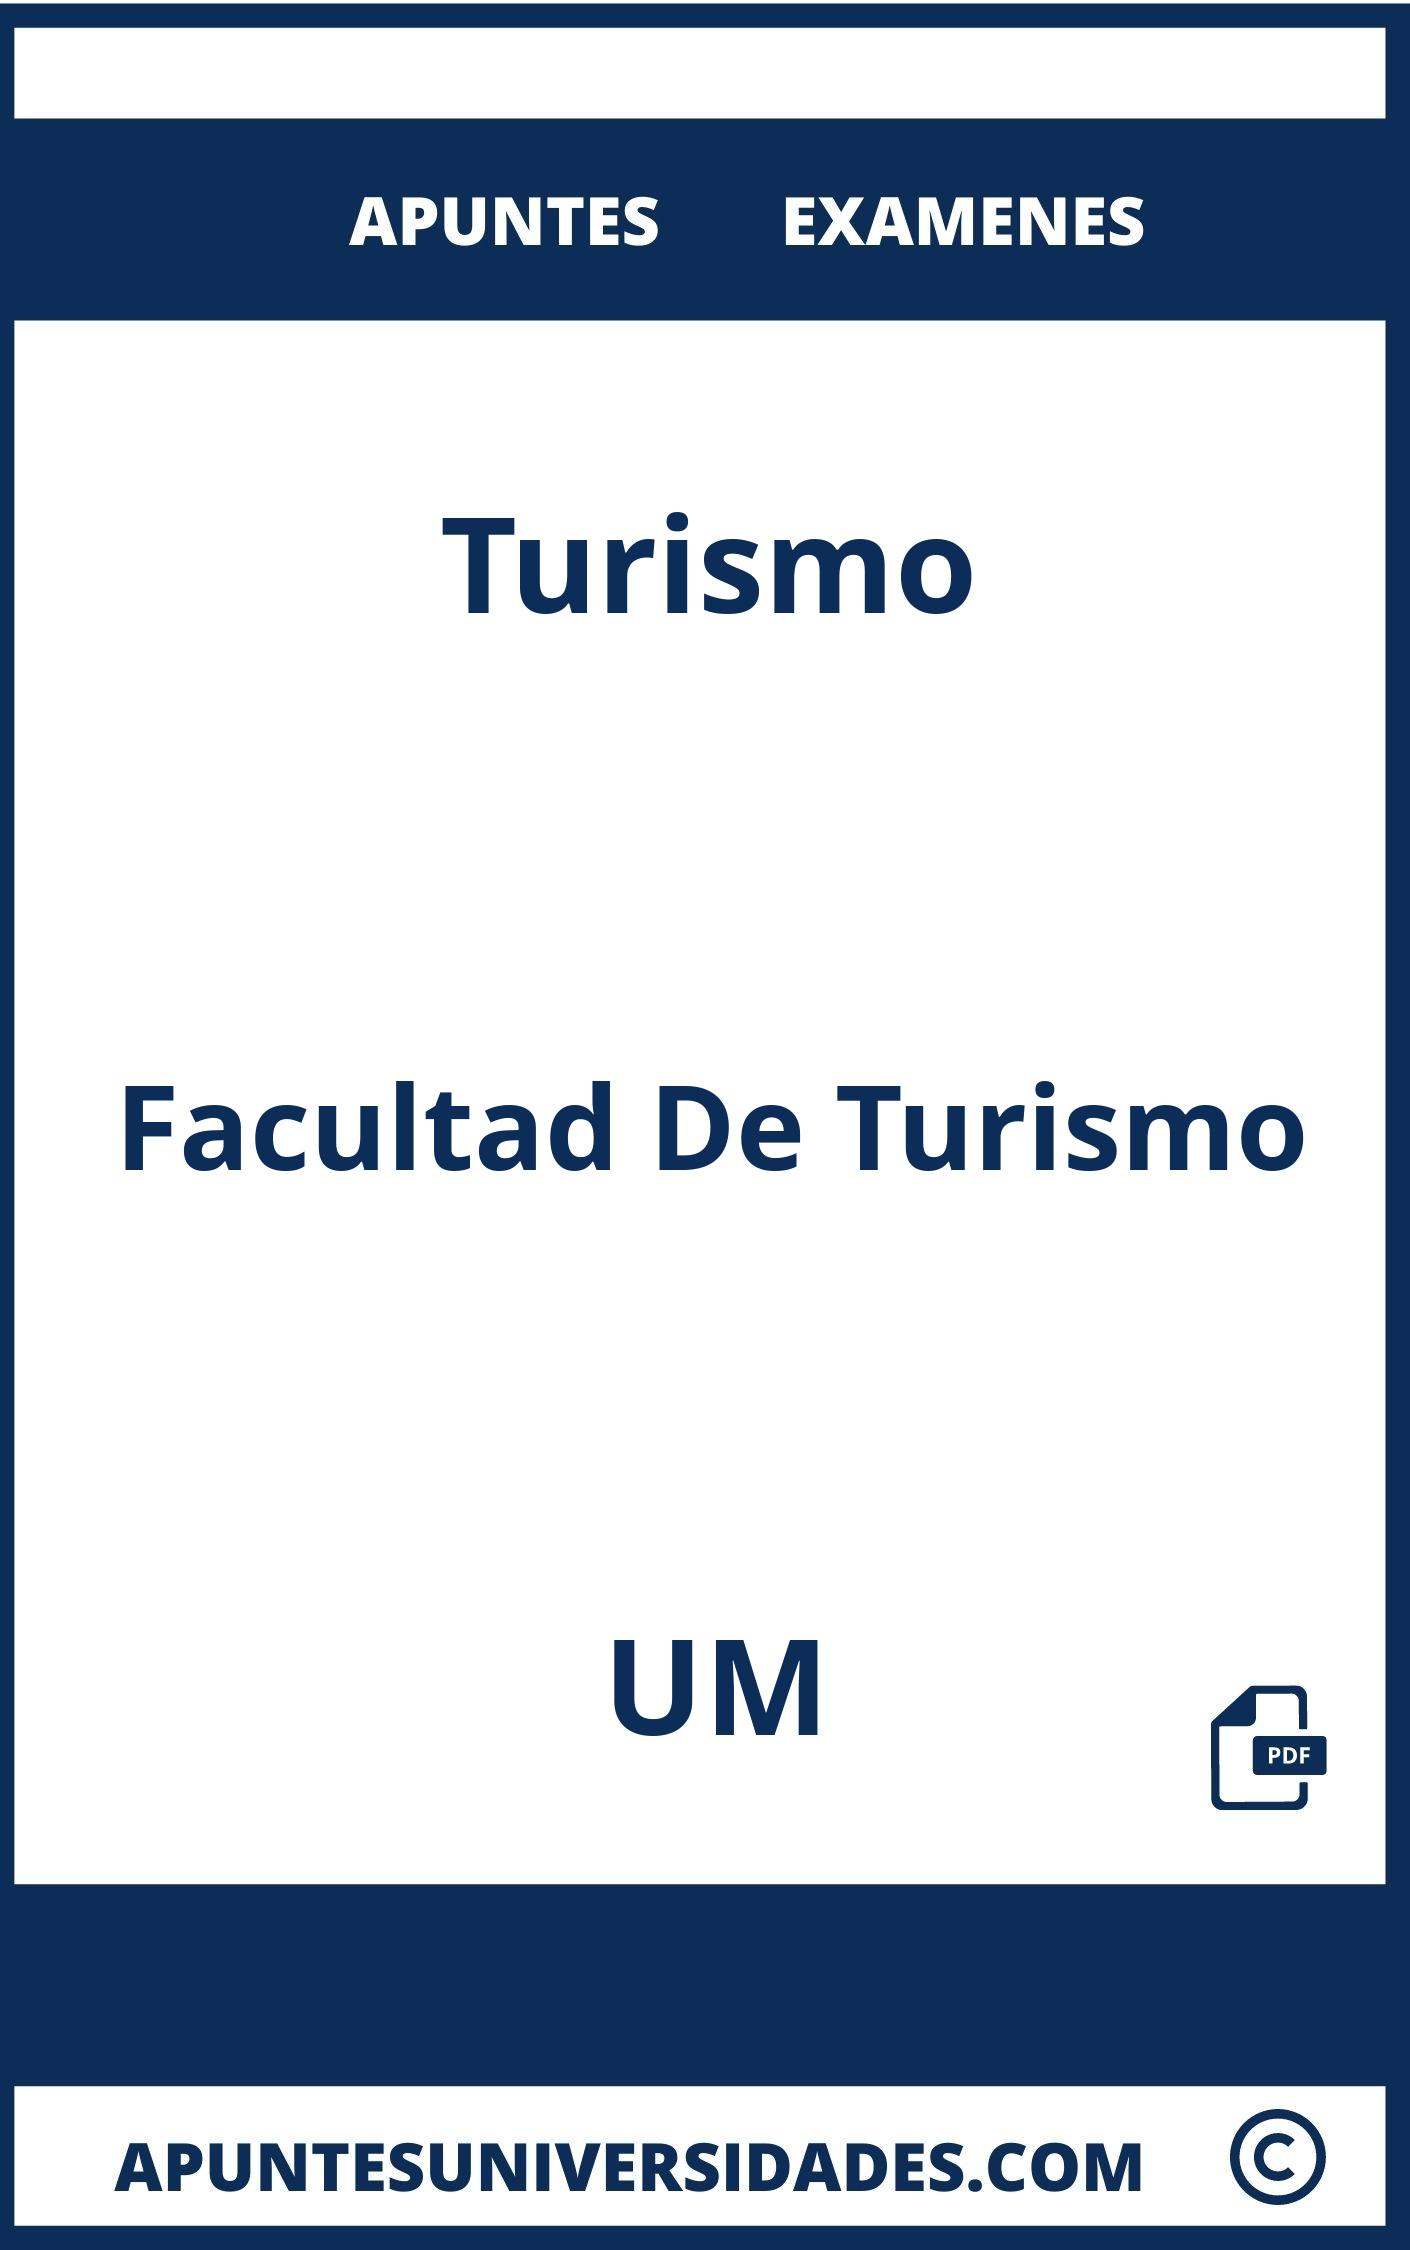 Turismo UM Apuntes Examenes